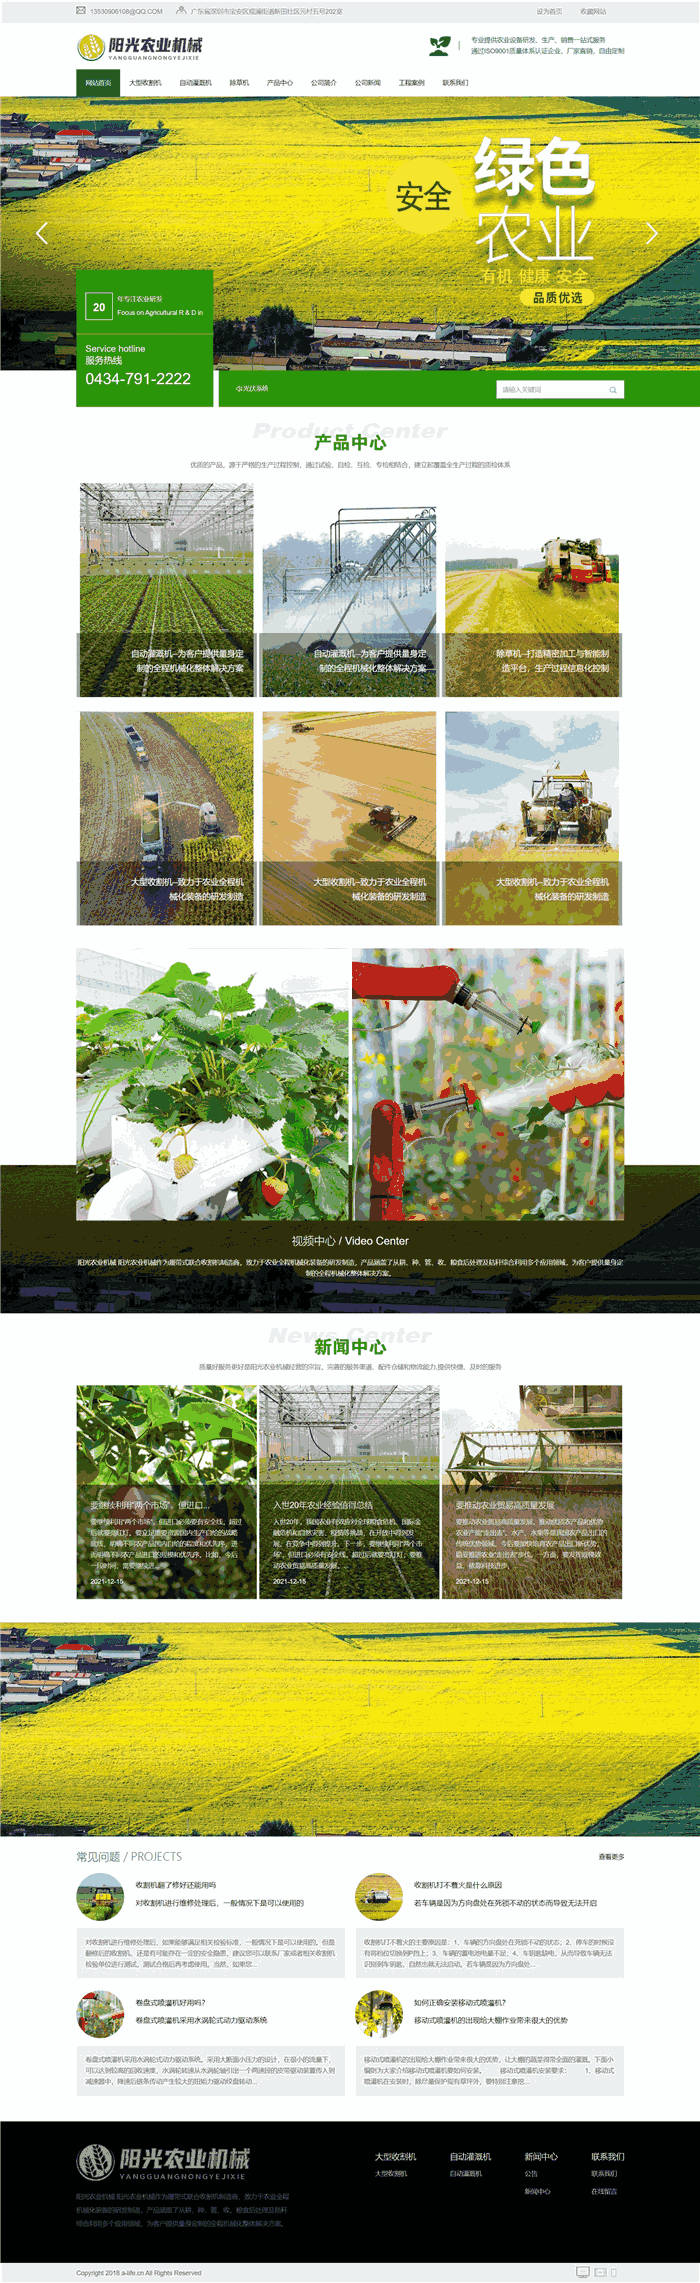 高档漂亮大型收割机自动灌溉机除草机农业机械网站WP模板效果图